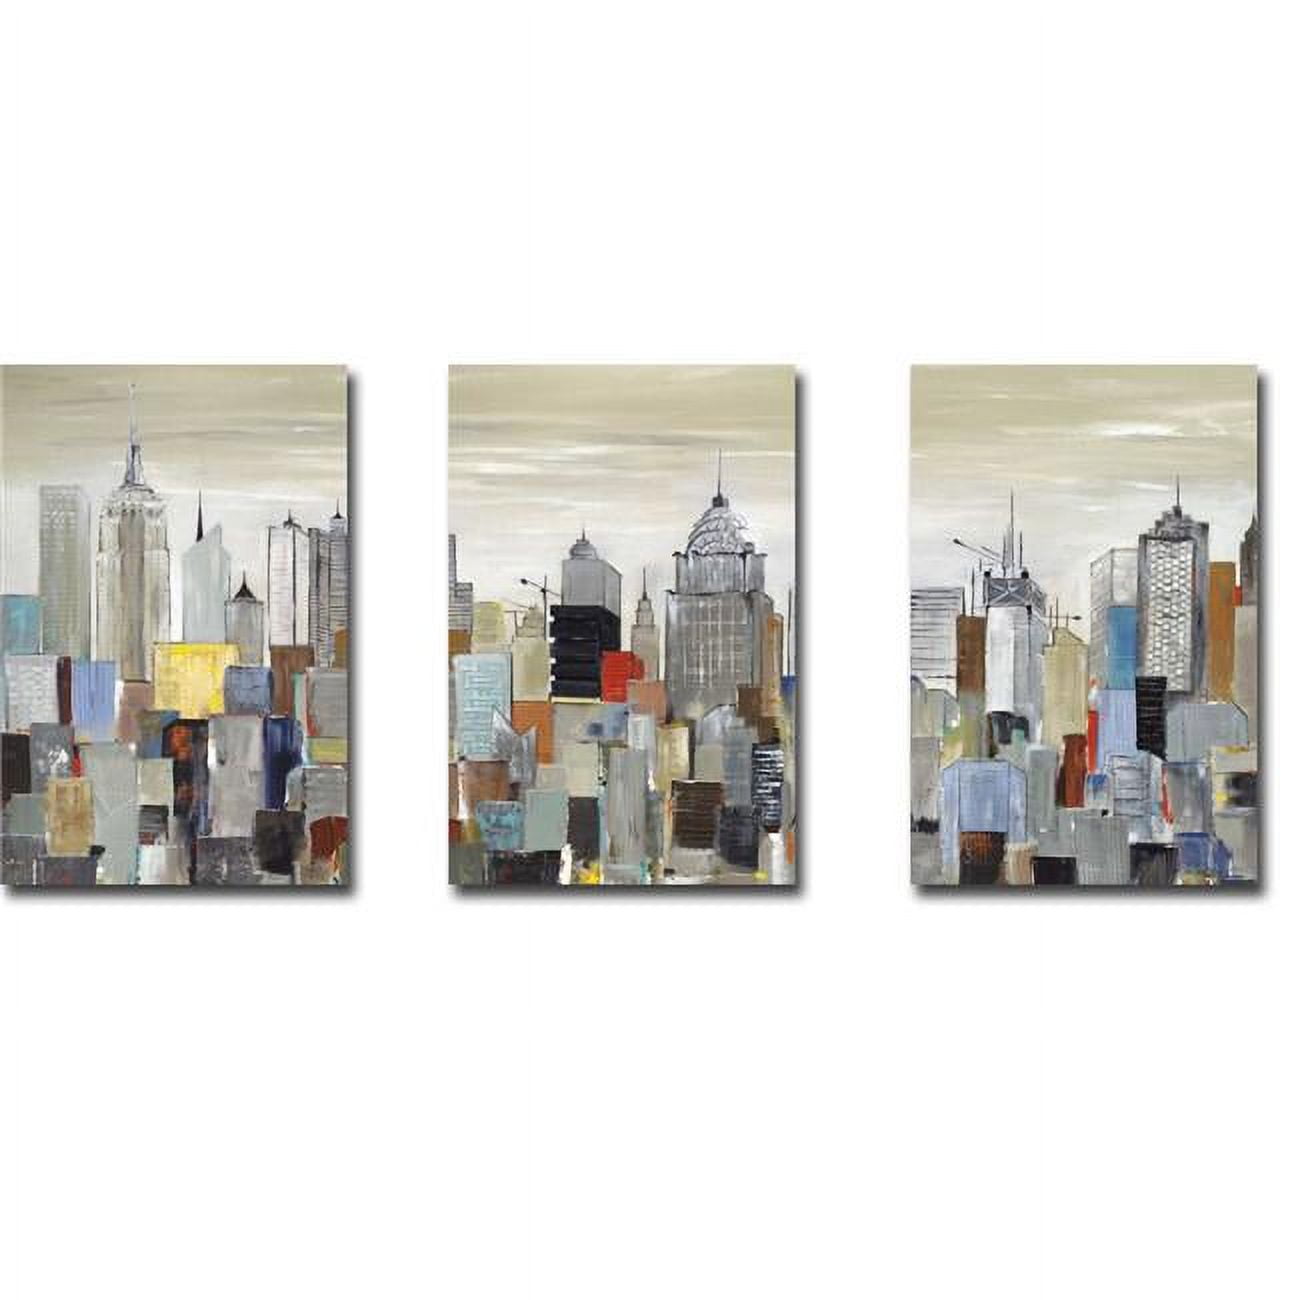 1624s894cg New York Skyline I, Ii, & Iii By Aziz Kadmiri 3 Piece Premium Gallery-wrapped Canvas Giclee Art Set - 16 X 24 X 1.5 In.